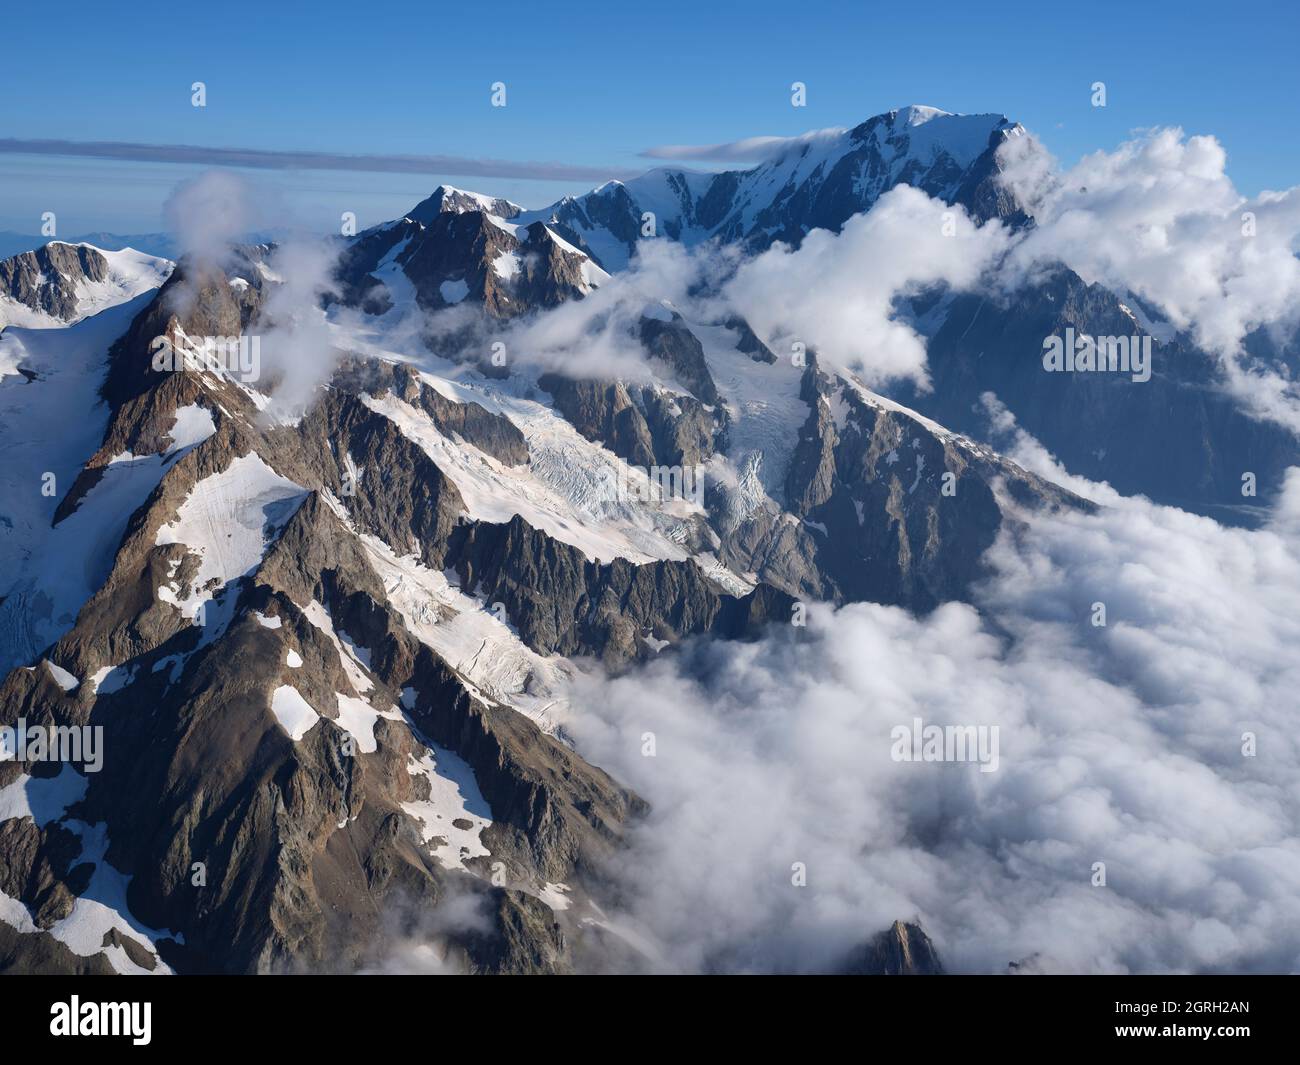 AERIAL VIEW. Aiguille des Glaciers, Aiguille de Trè la Tête and Mont Blanc (in the distance). Val Veni, Courmayeur, Aosta Valley, Italy. Stock Photo